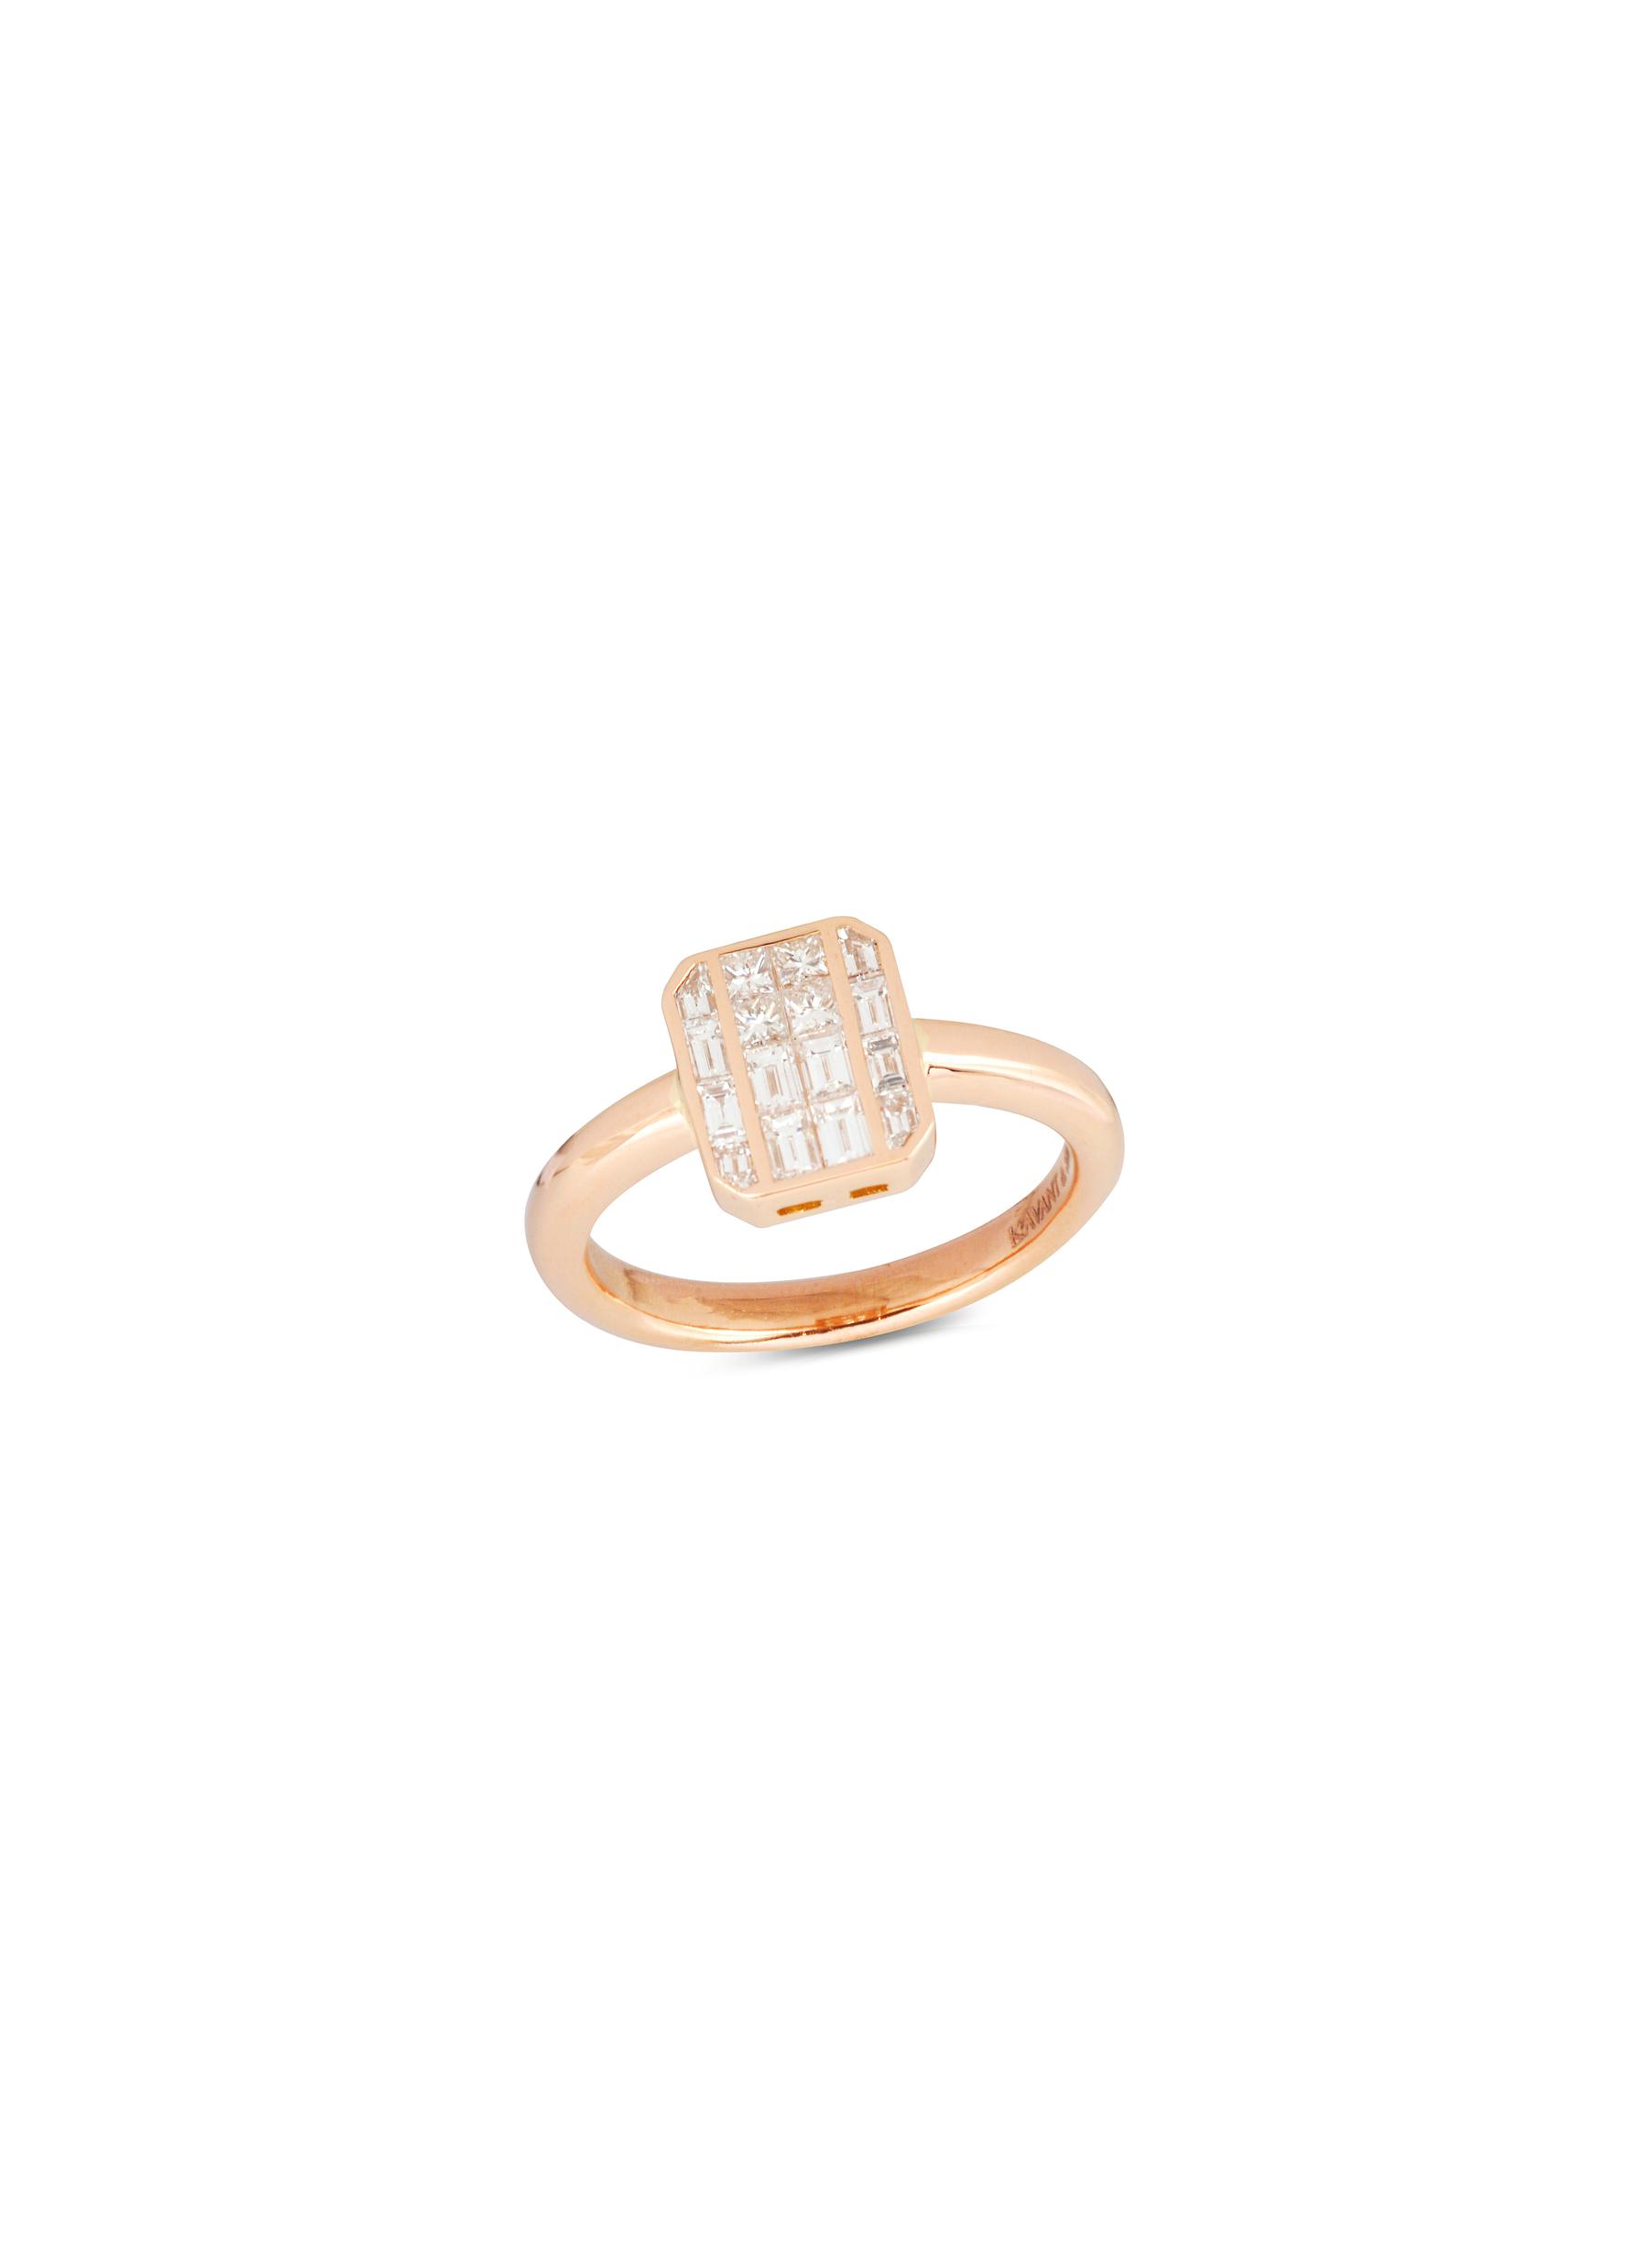 KAVANT & SHARART ‘GeoArt' Diamond 18K Rose Gold Ring